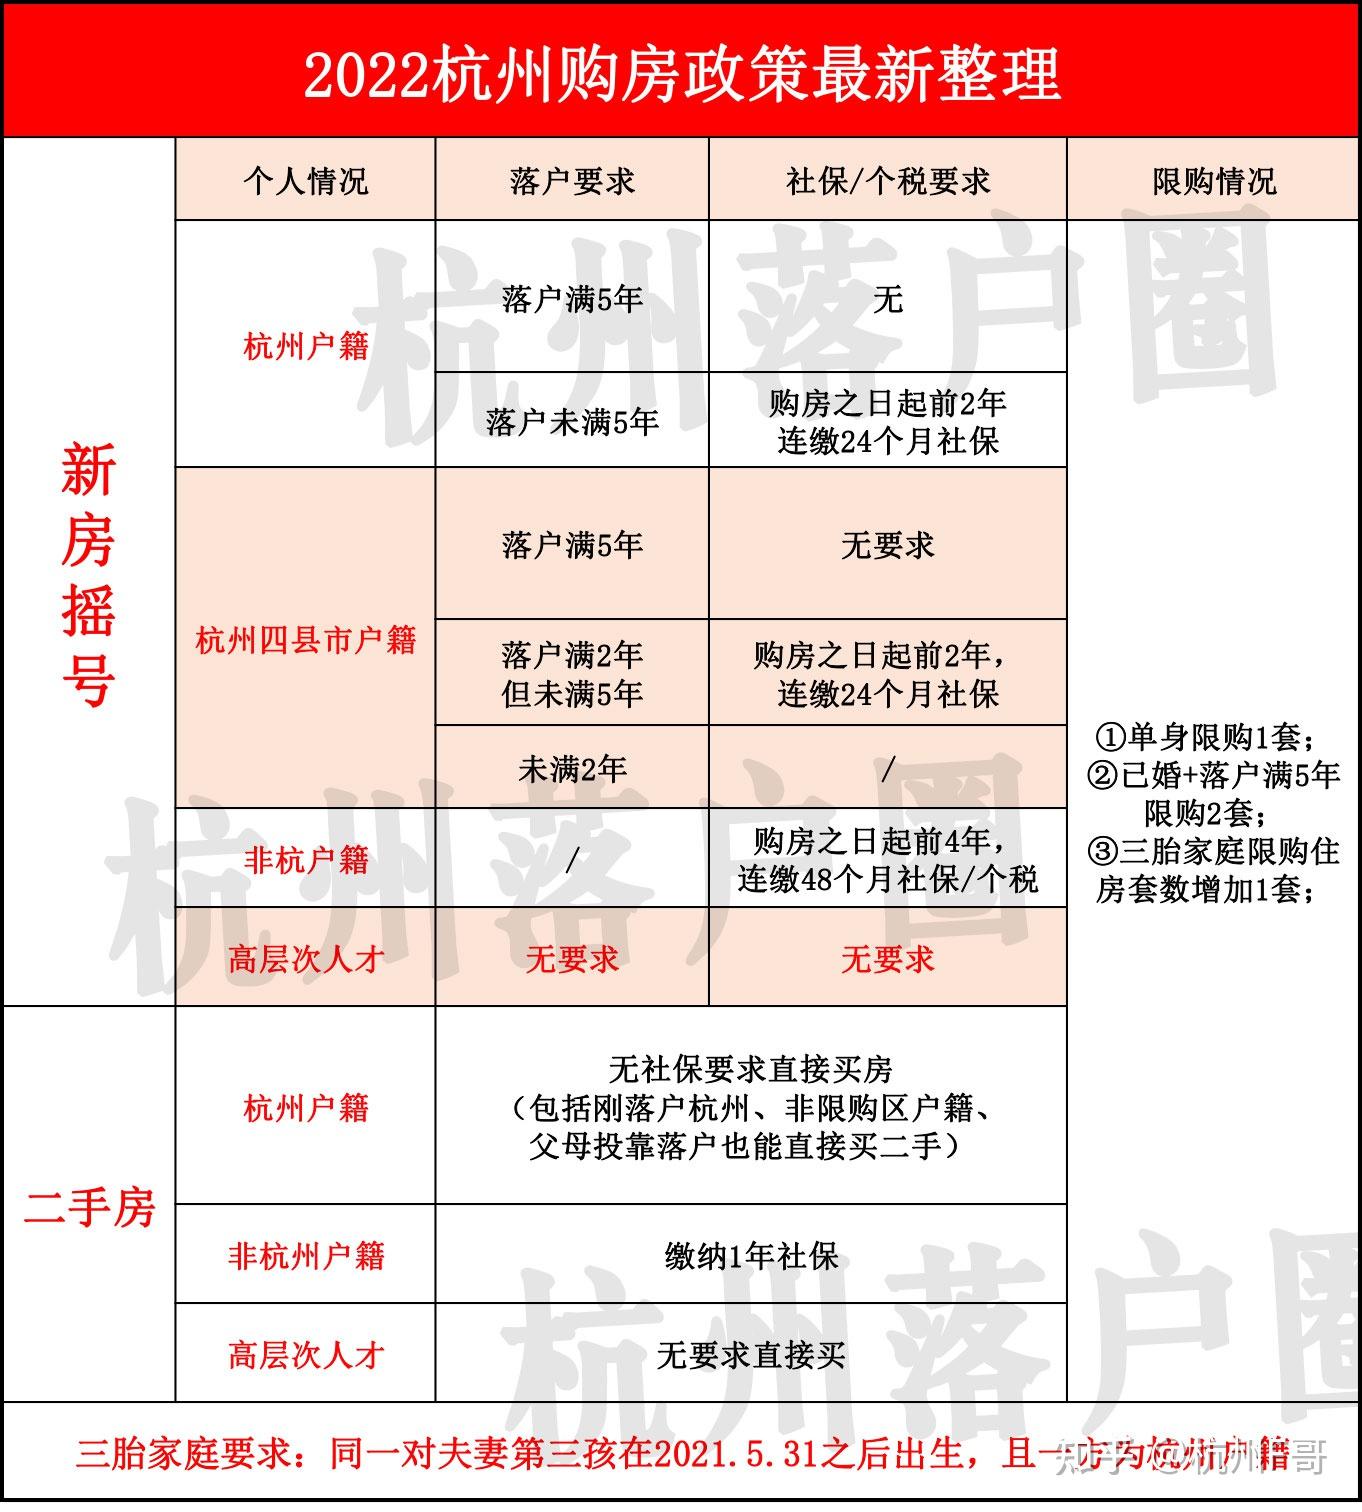 2023年杭州购房政策最新版 - 知乎